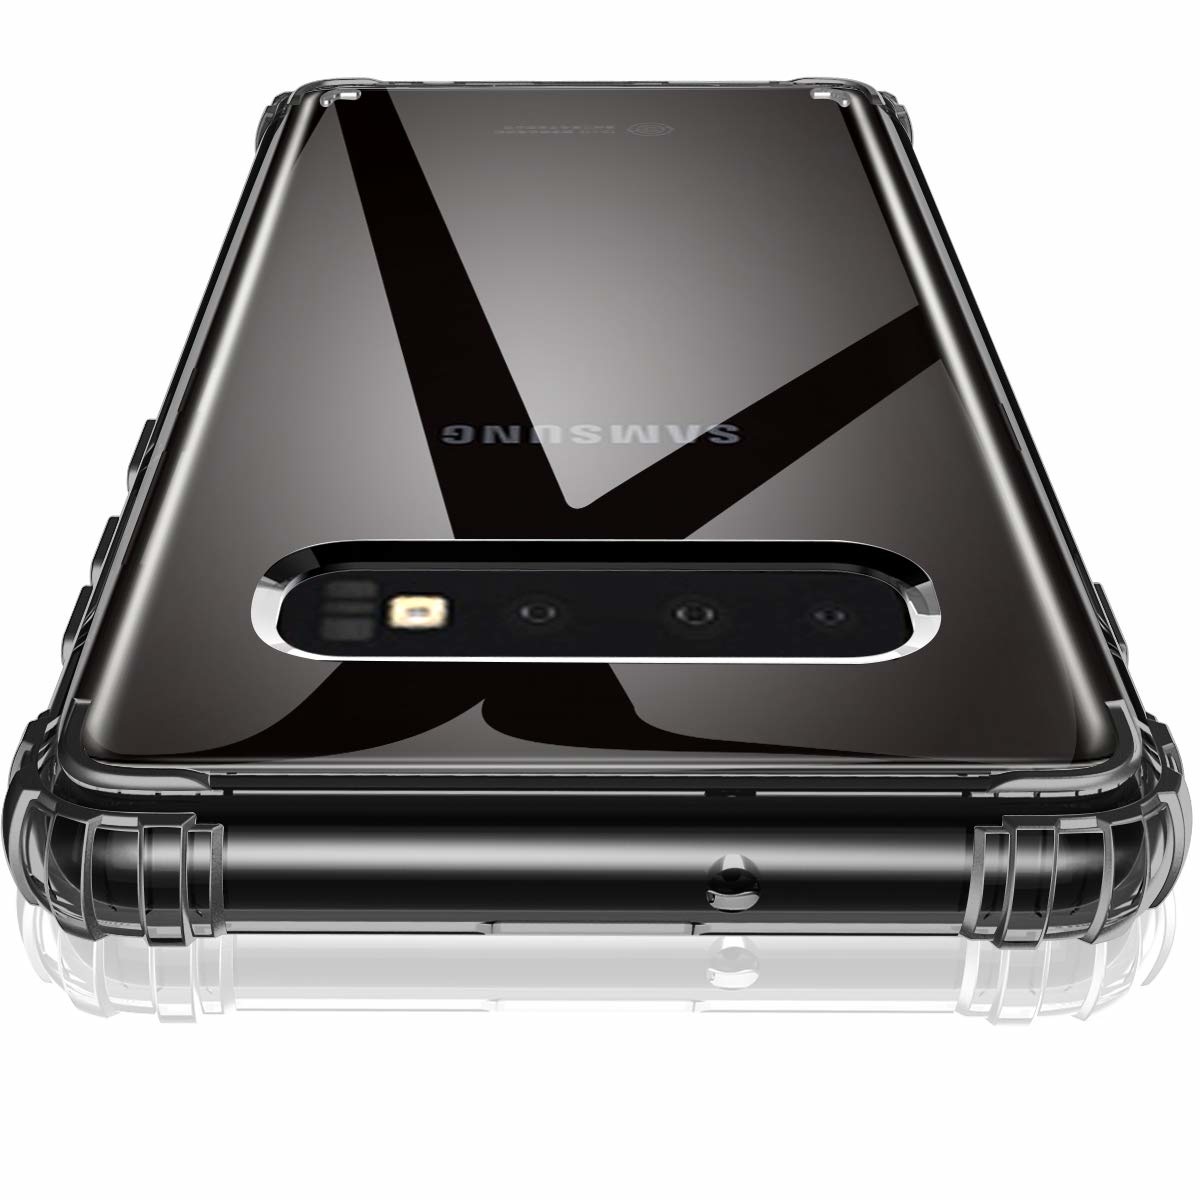 bescherming de Galaxy S10 toestellen - Phone-Factory